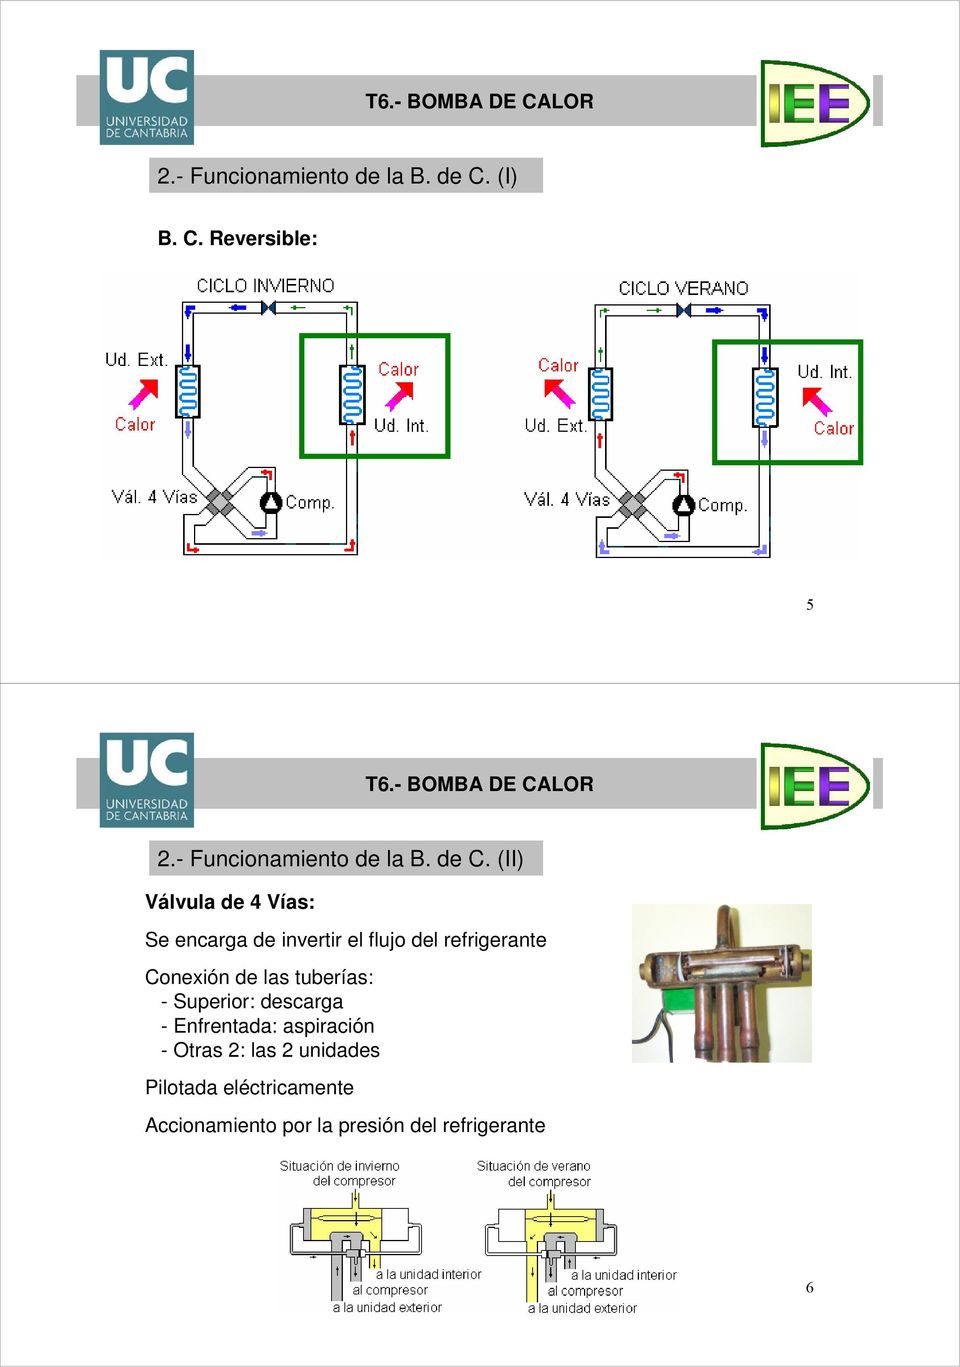 (II) Válvula de 4 Vías: Se encarga de invertir el flujo del refrigerante Conexión